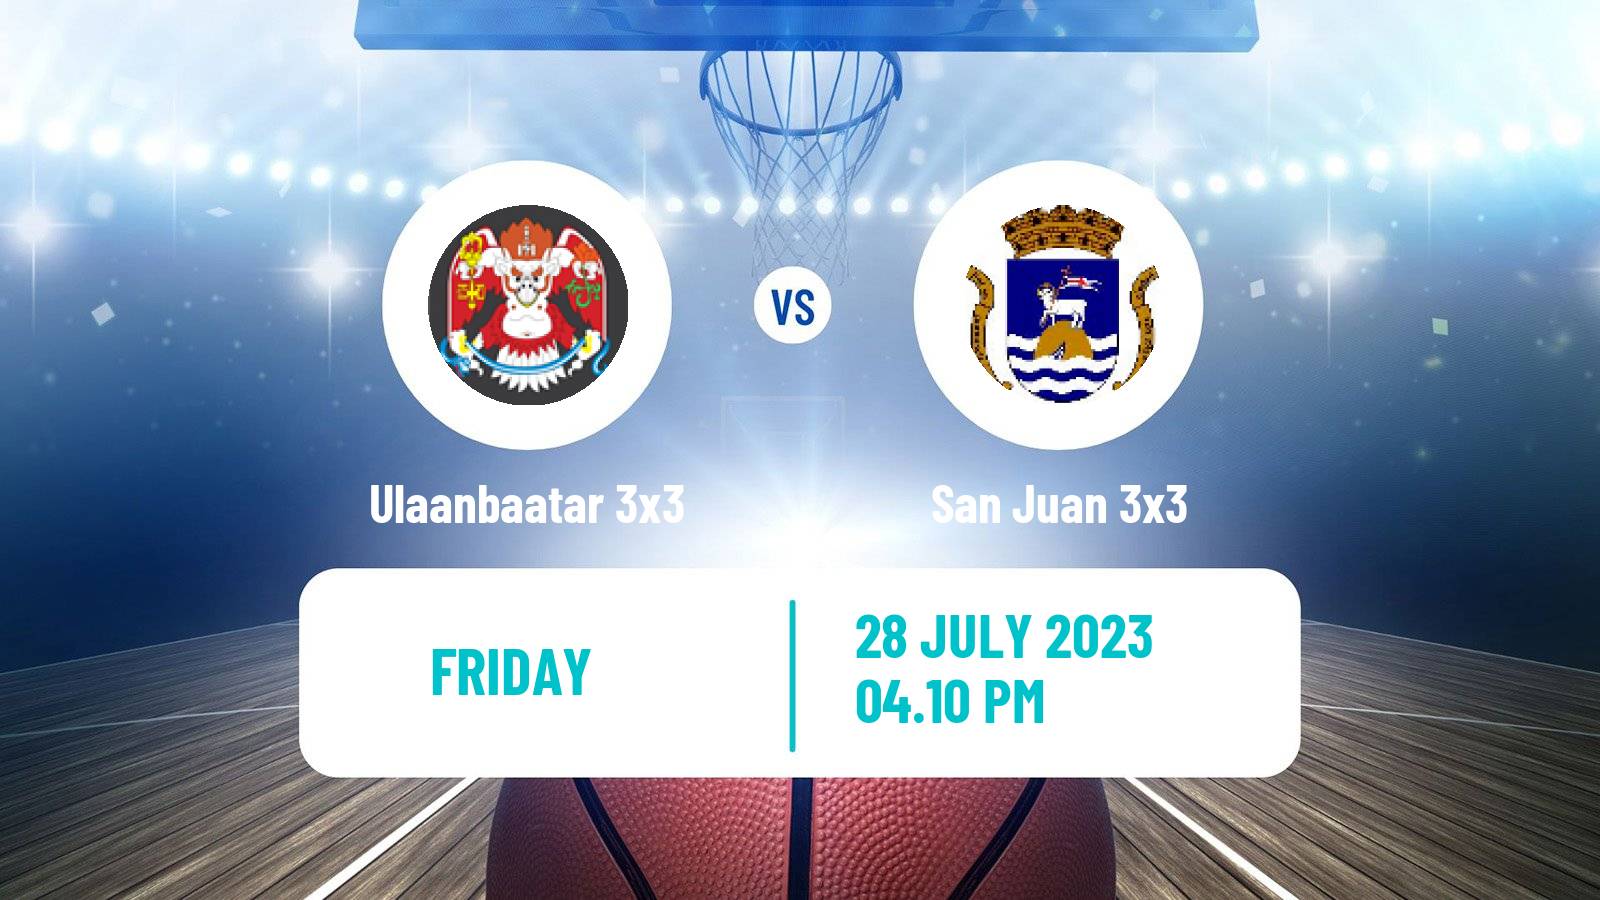 Basketball World Tour Edmonton 3x3 Ulaanbaatar 3x3 - San Juan 3x3